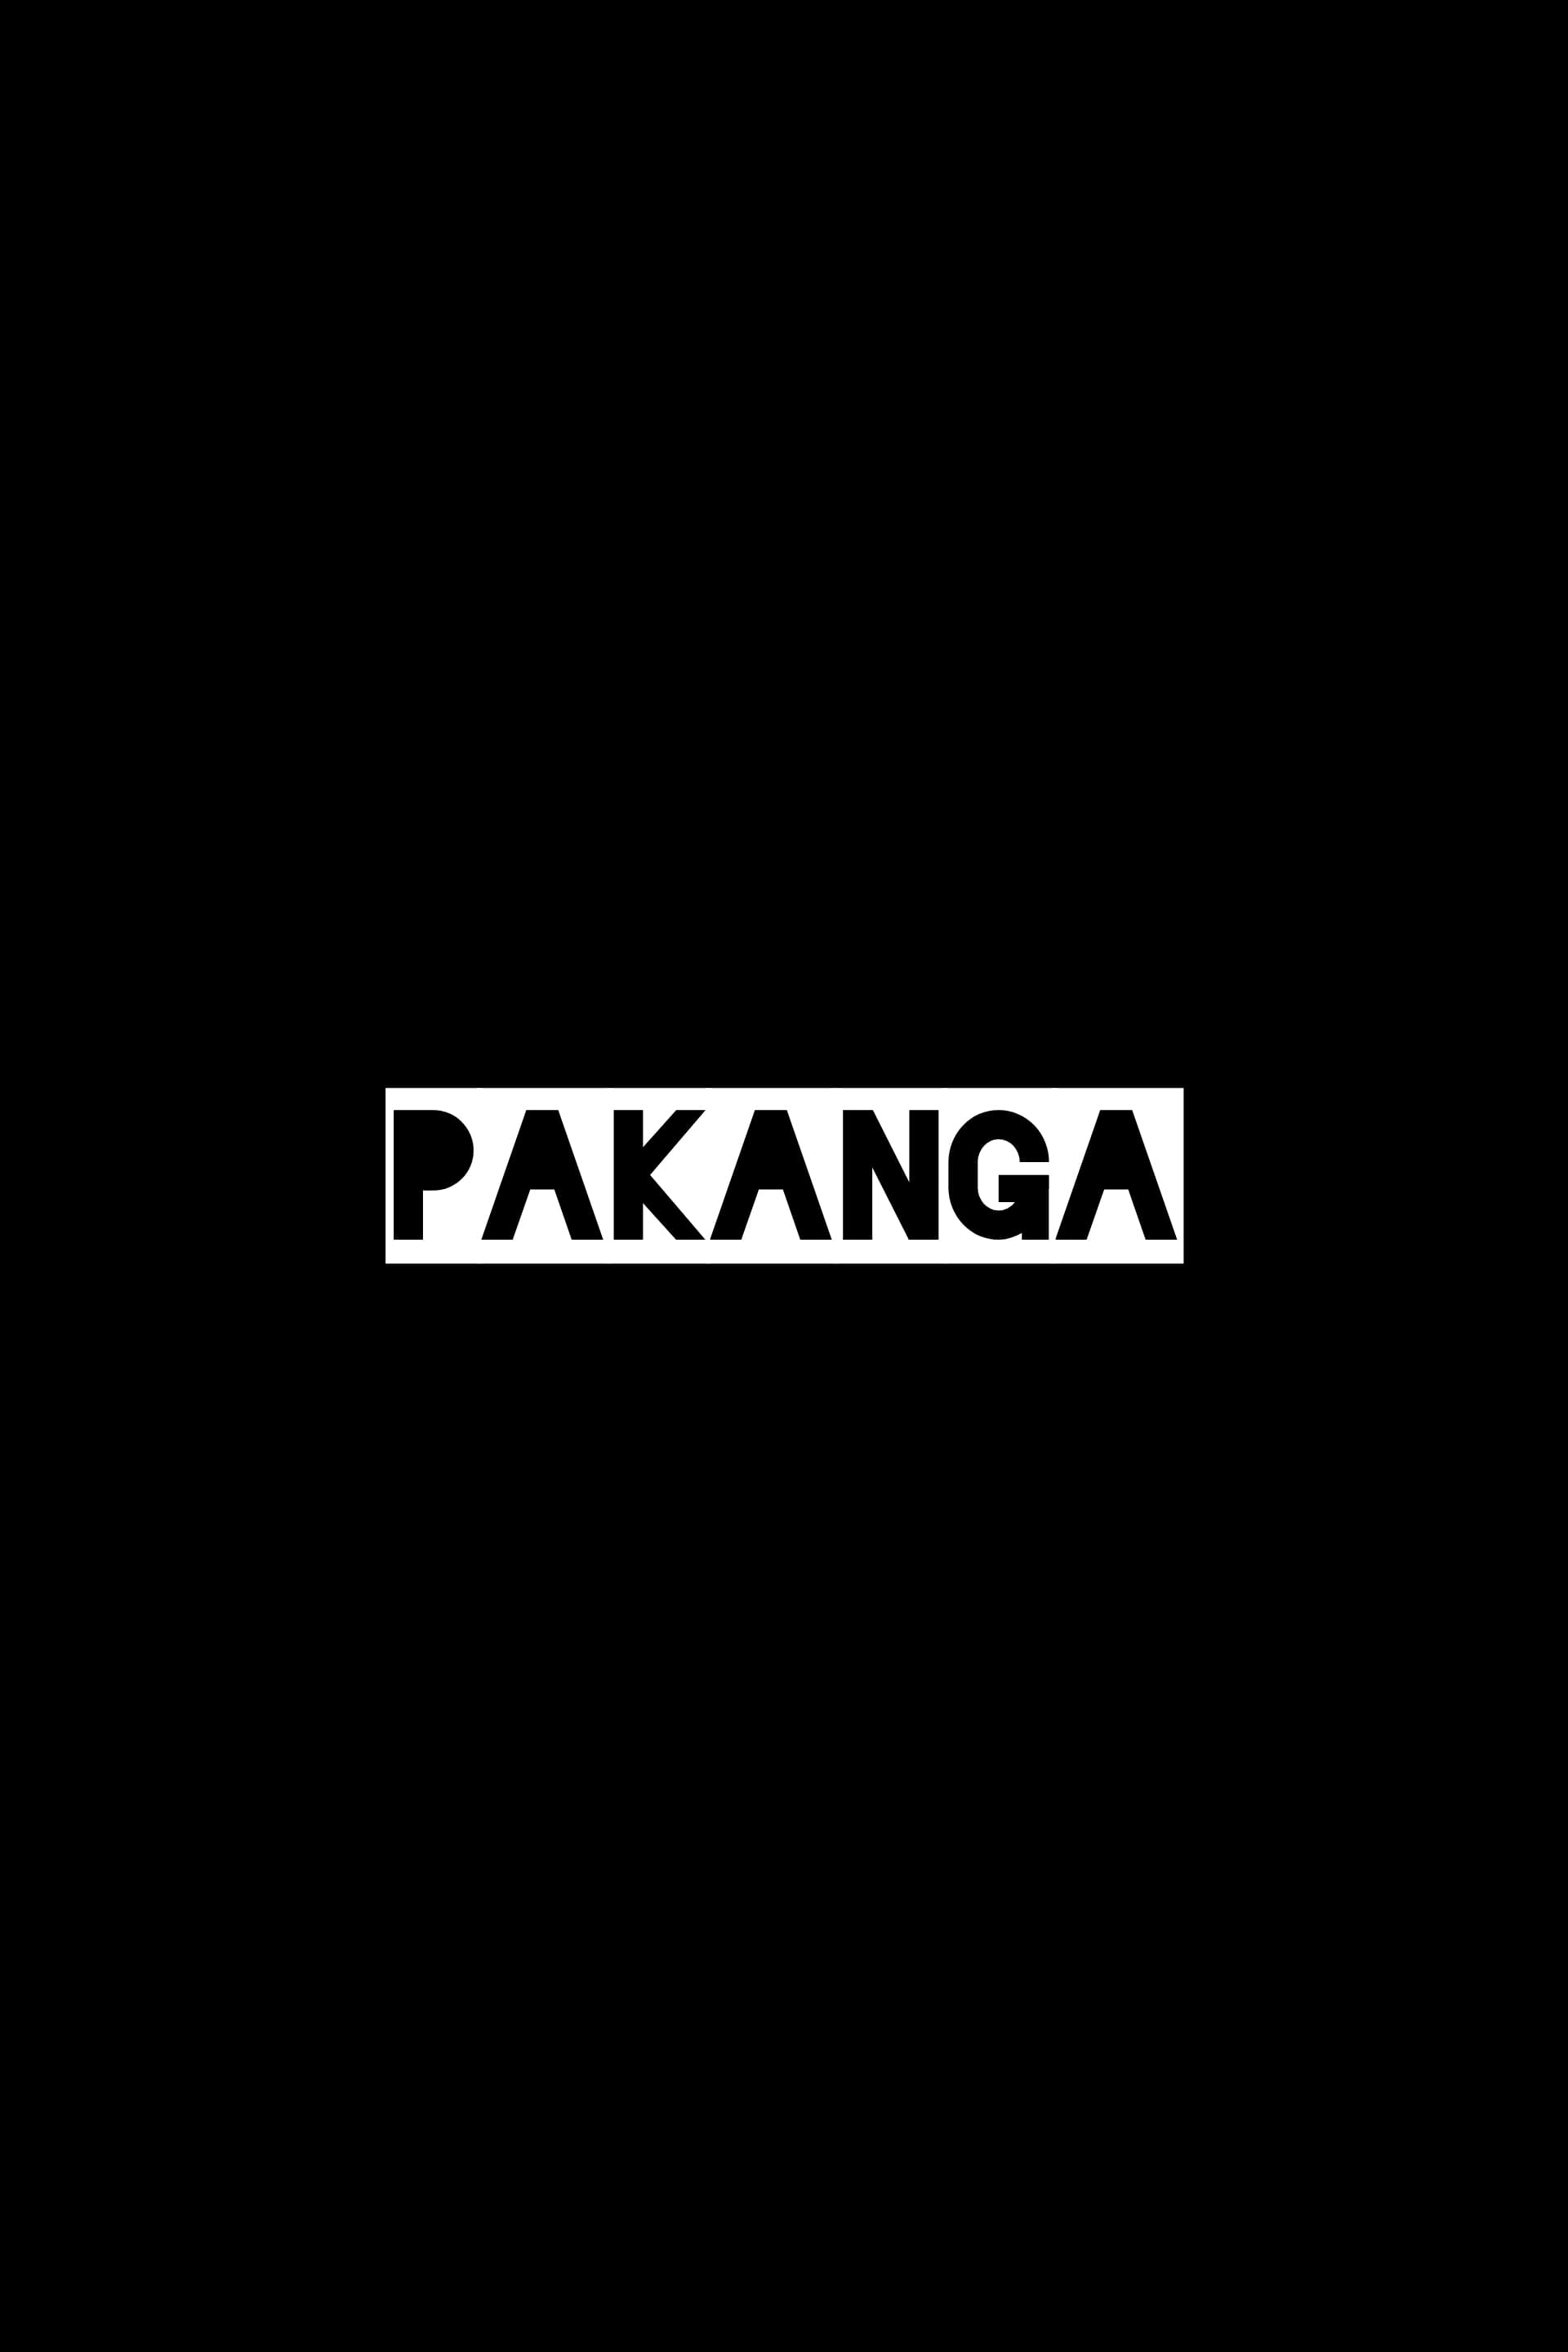 Pakanga